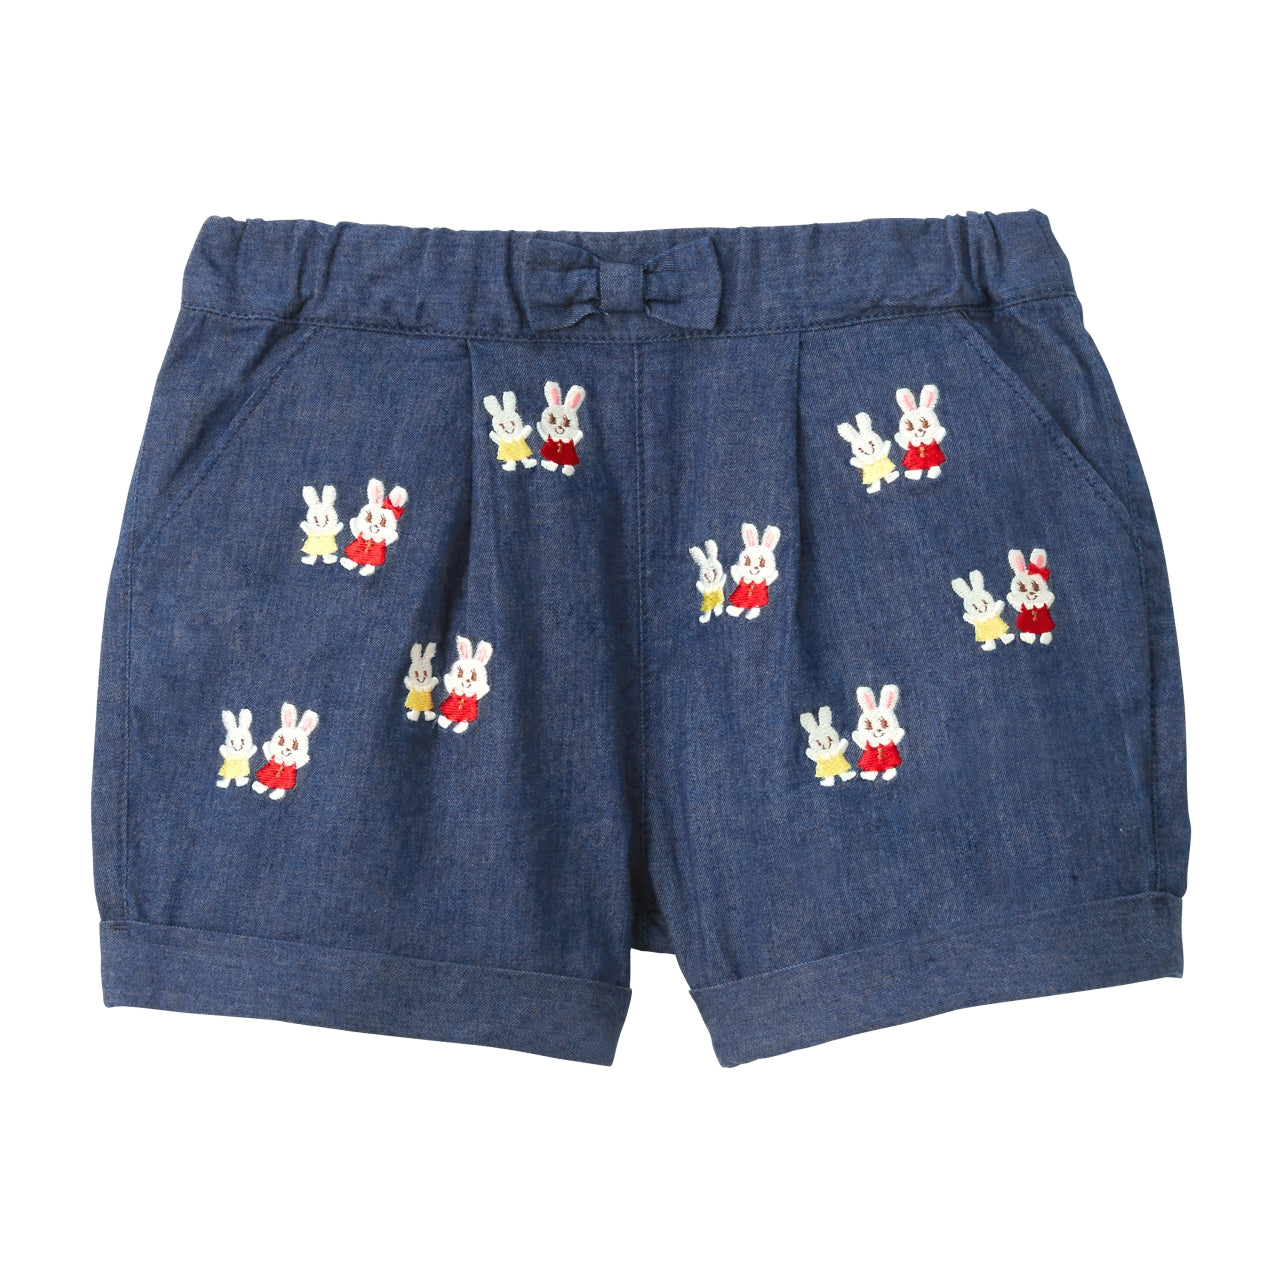 Bunny Shorts 